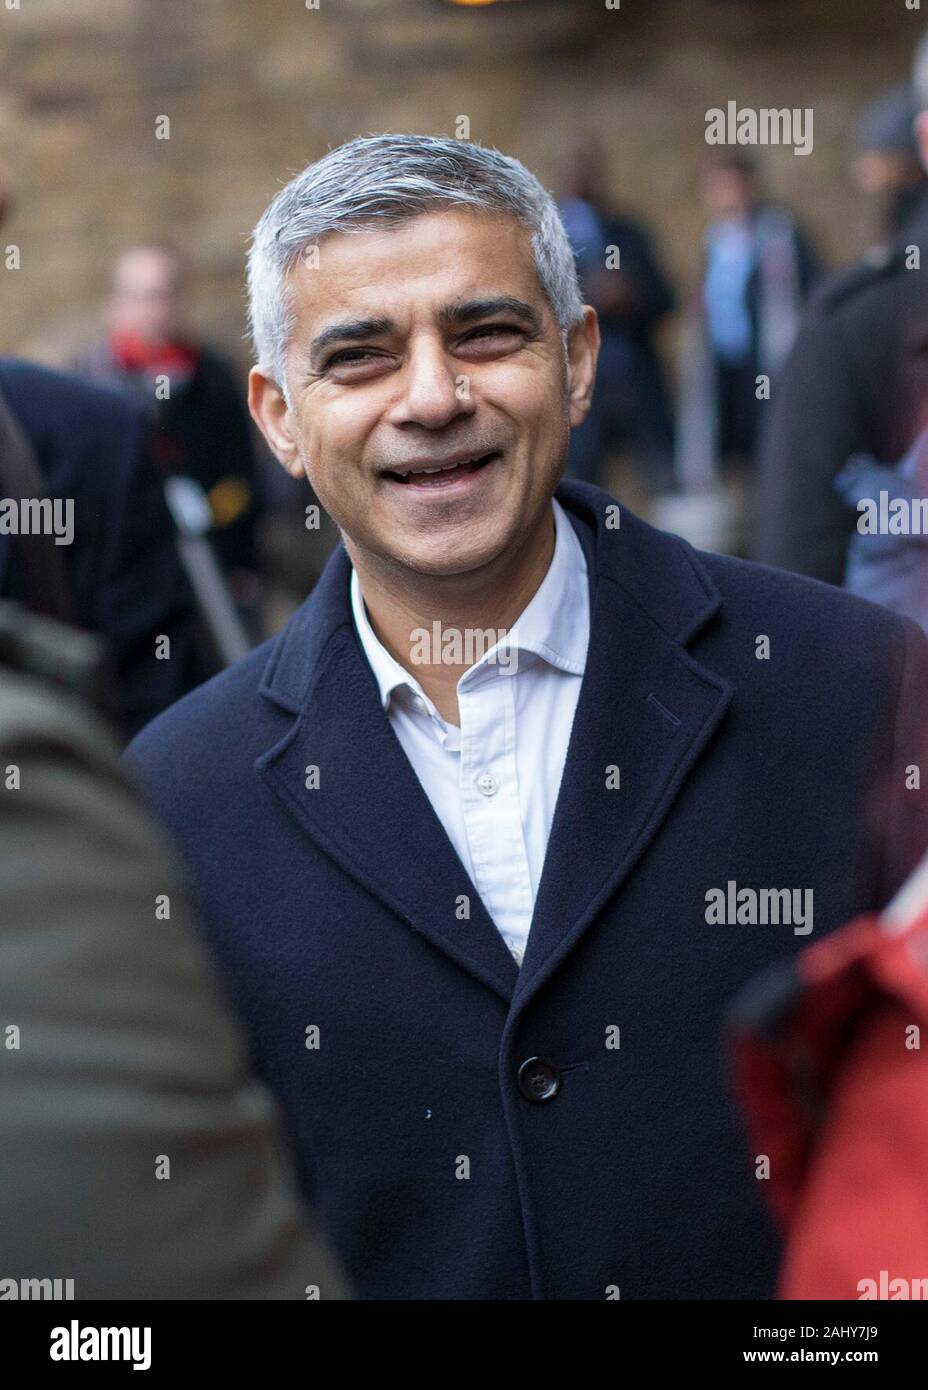 Bürgermeister von London Sadiq Khan im Gespräch mit pendler an der London Bridge Station zu Beginn seiner Kampagne für die Londoner Bürgermeisterwahl. Stockfoto